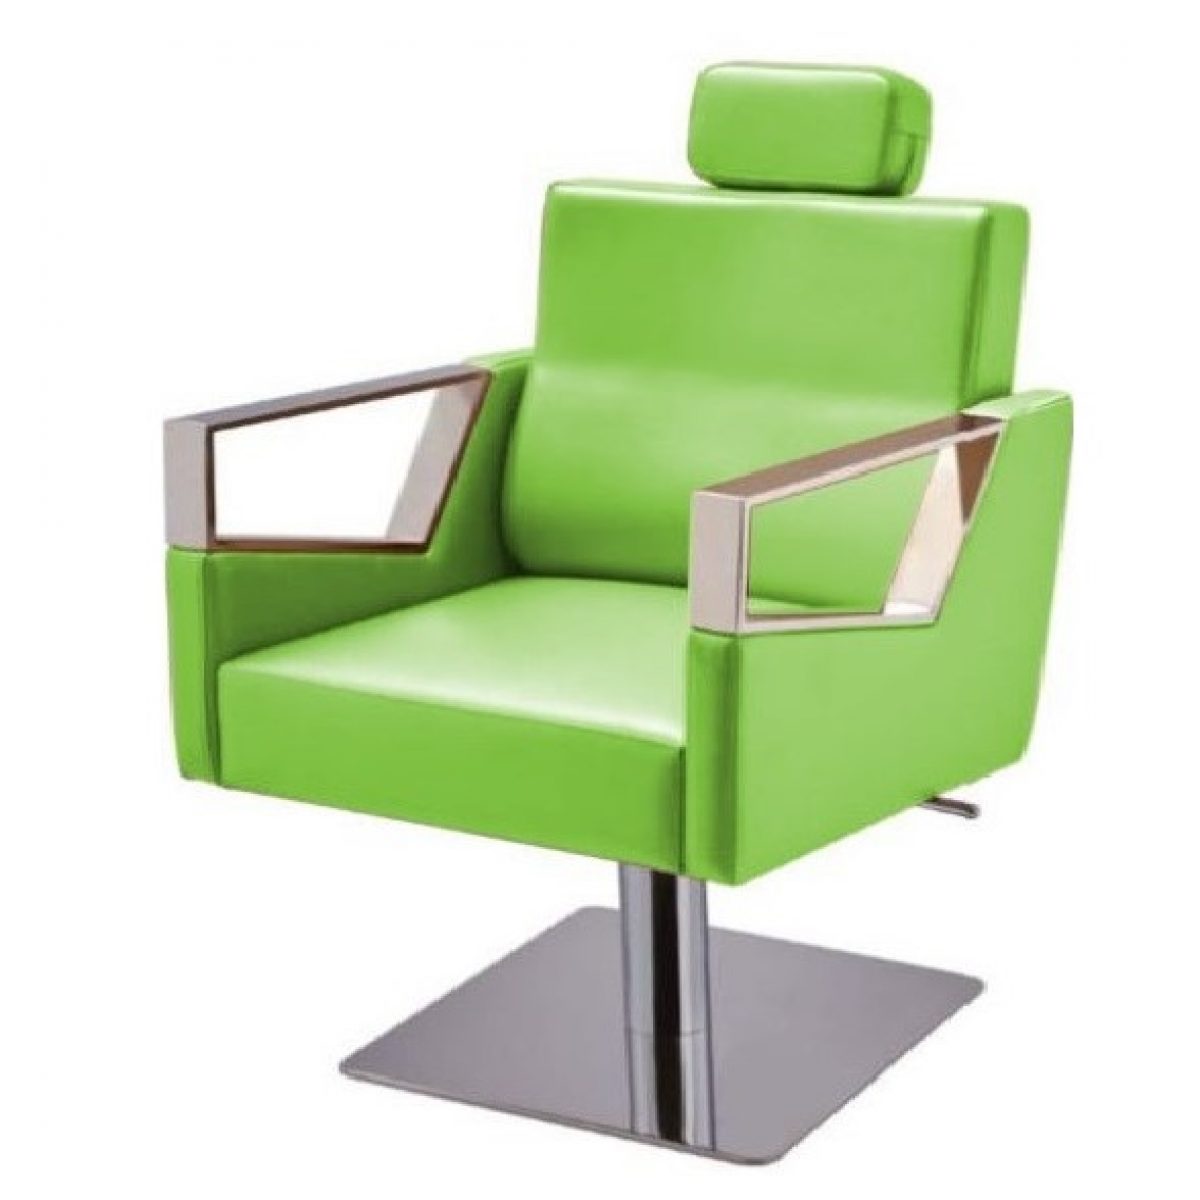 Galaxy Salon Chair - Beauty Salon Furniture